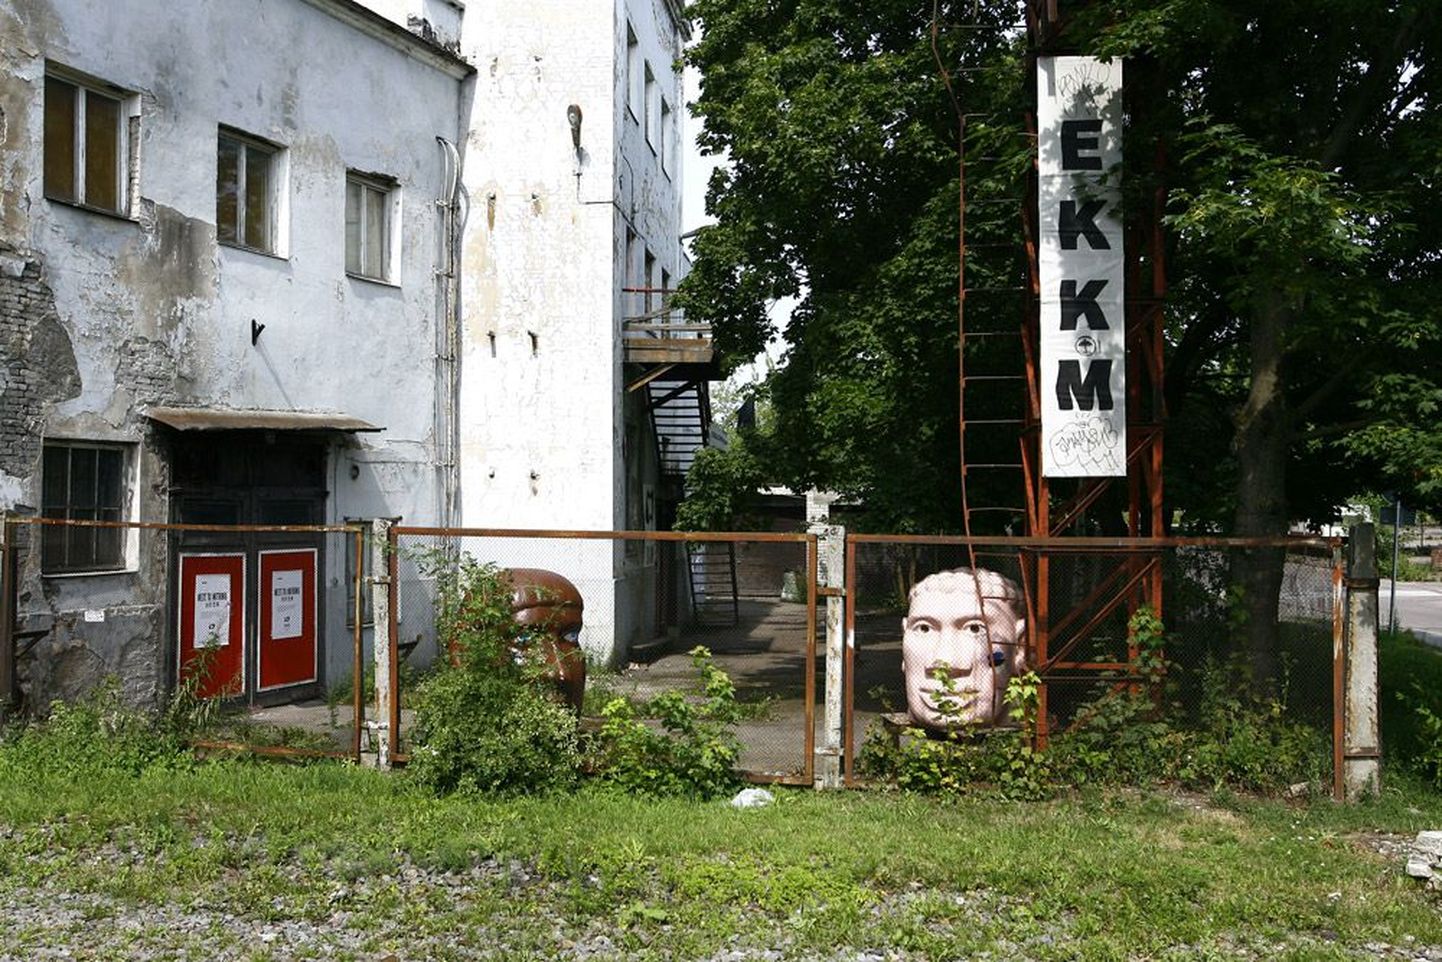 Музей современного искусства расположен в черте приморского культурного километра, так что культурная столица Таллинн 2011 без него не обойдется.